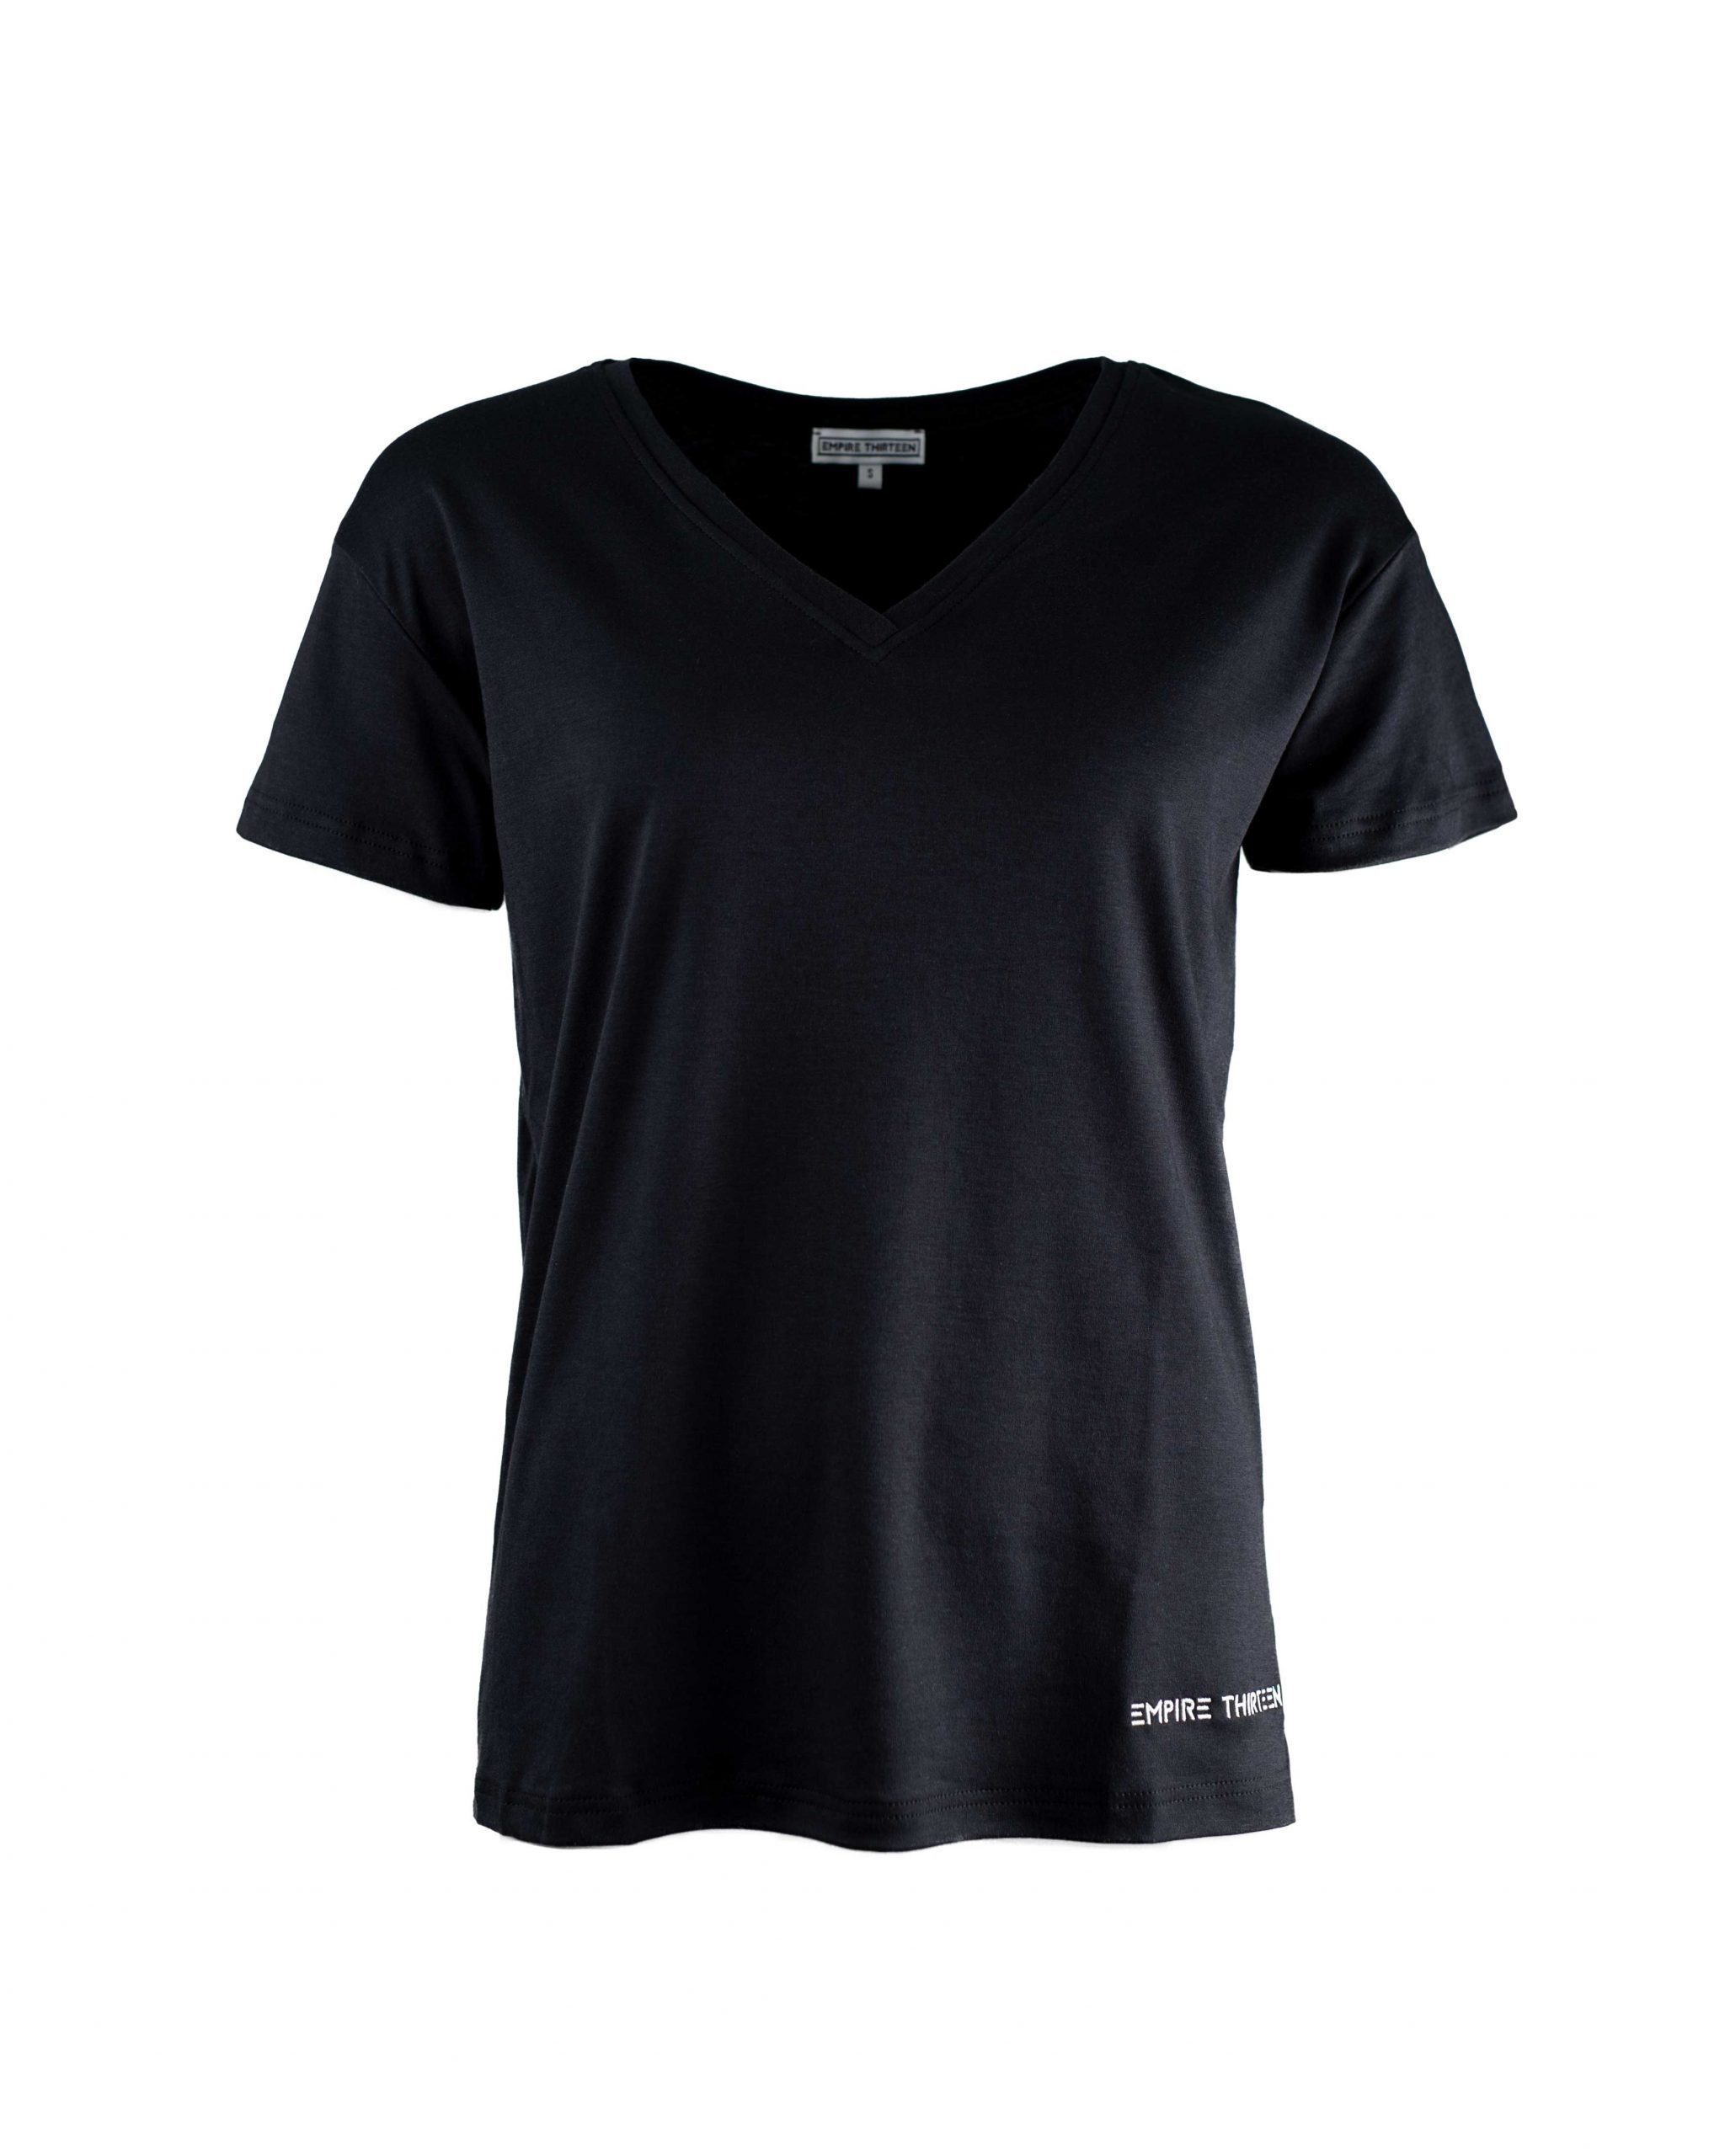 EMPIRE-THIRTEEN T-Shirt "EMPIRE-THIRTEEN" V-NECK SHIRT LADIES Logostickerei, V-Ausschnitt Schwarz